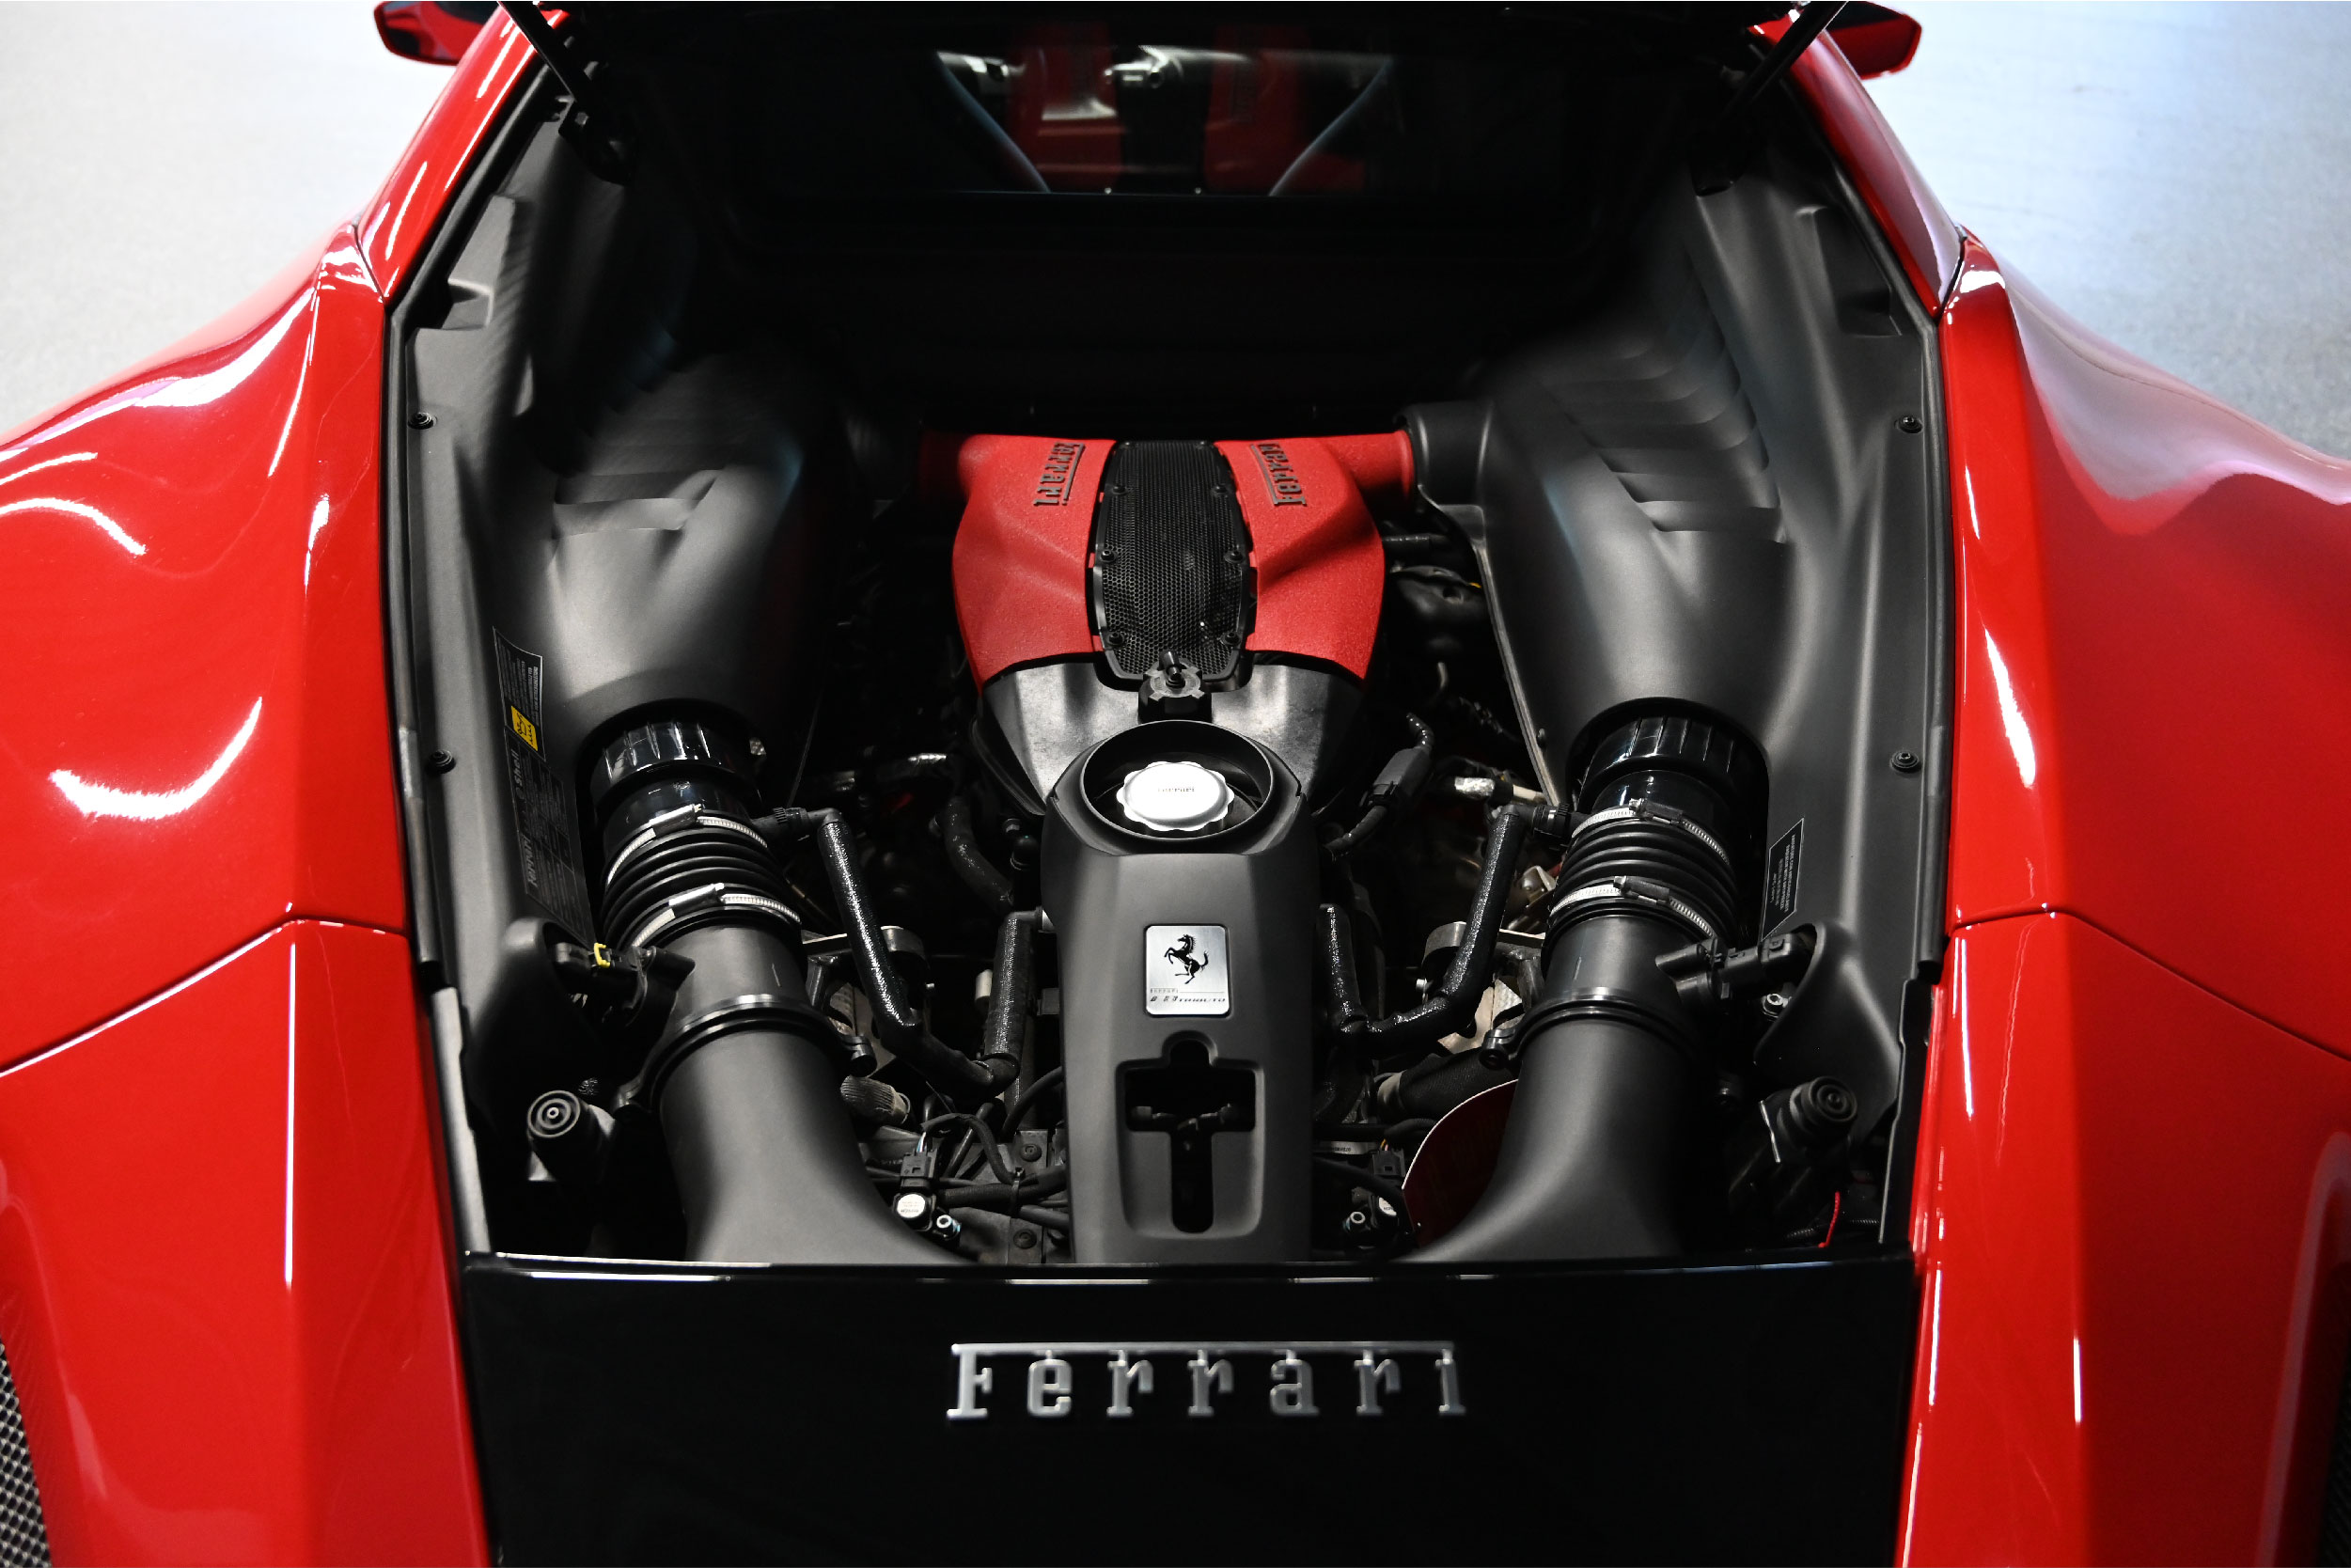 Mariani Motors Ferrari